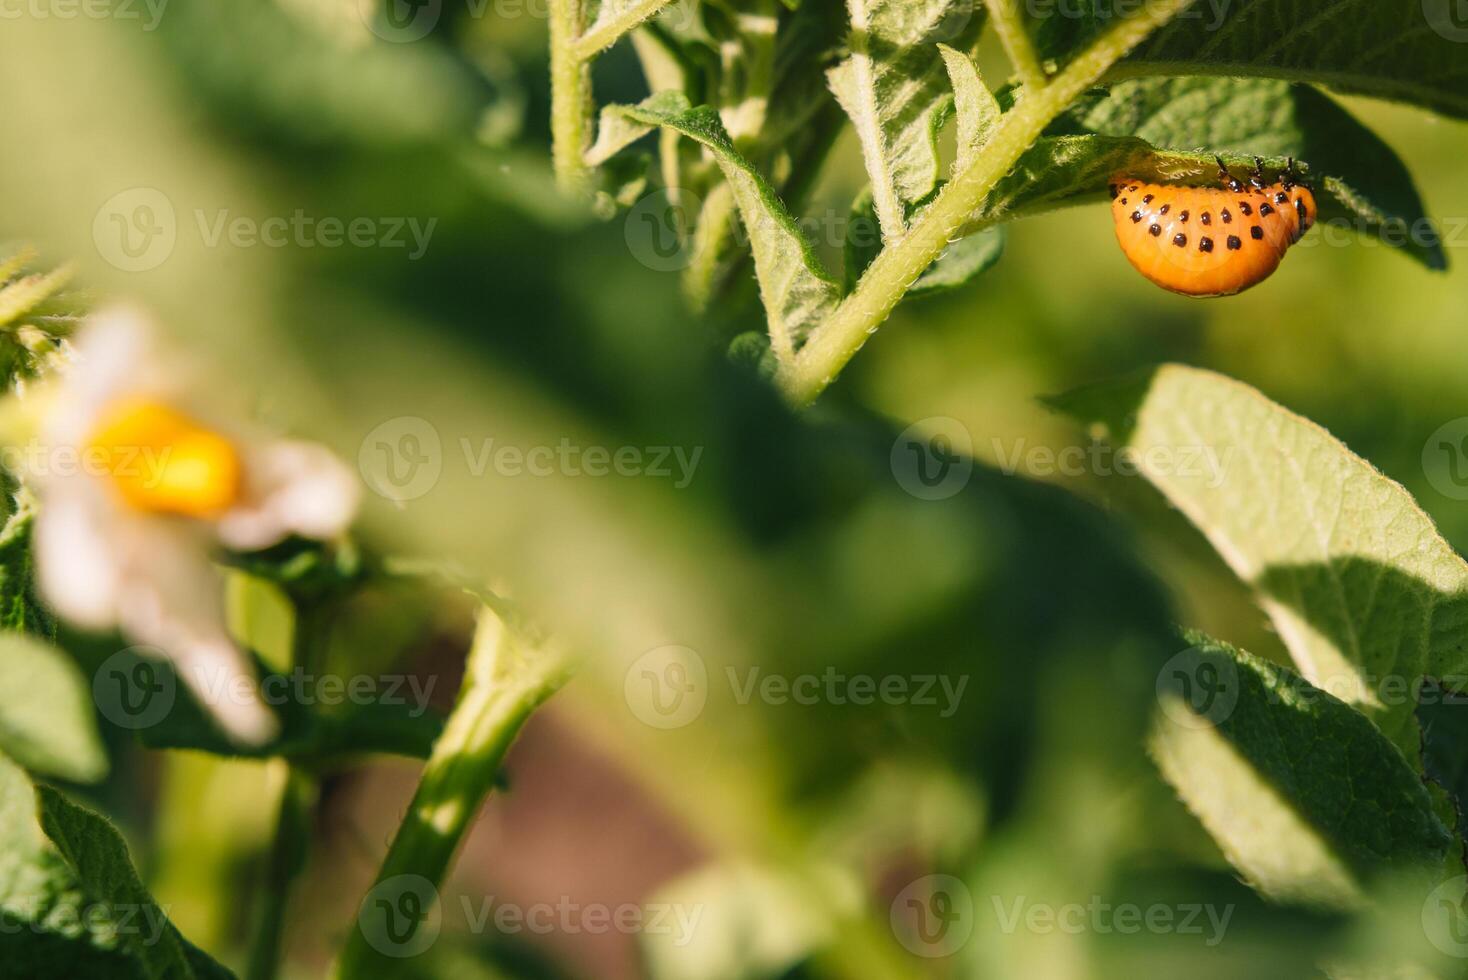 Colorado escarabajo come patata hojas, de cerca. concepto de invasión de escarabajos pobre cosecha de papas. foto